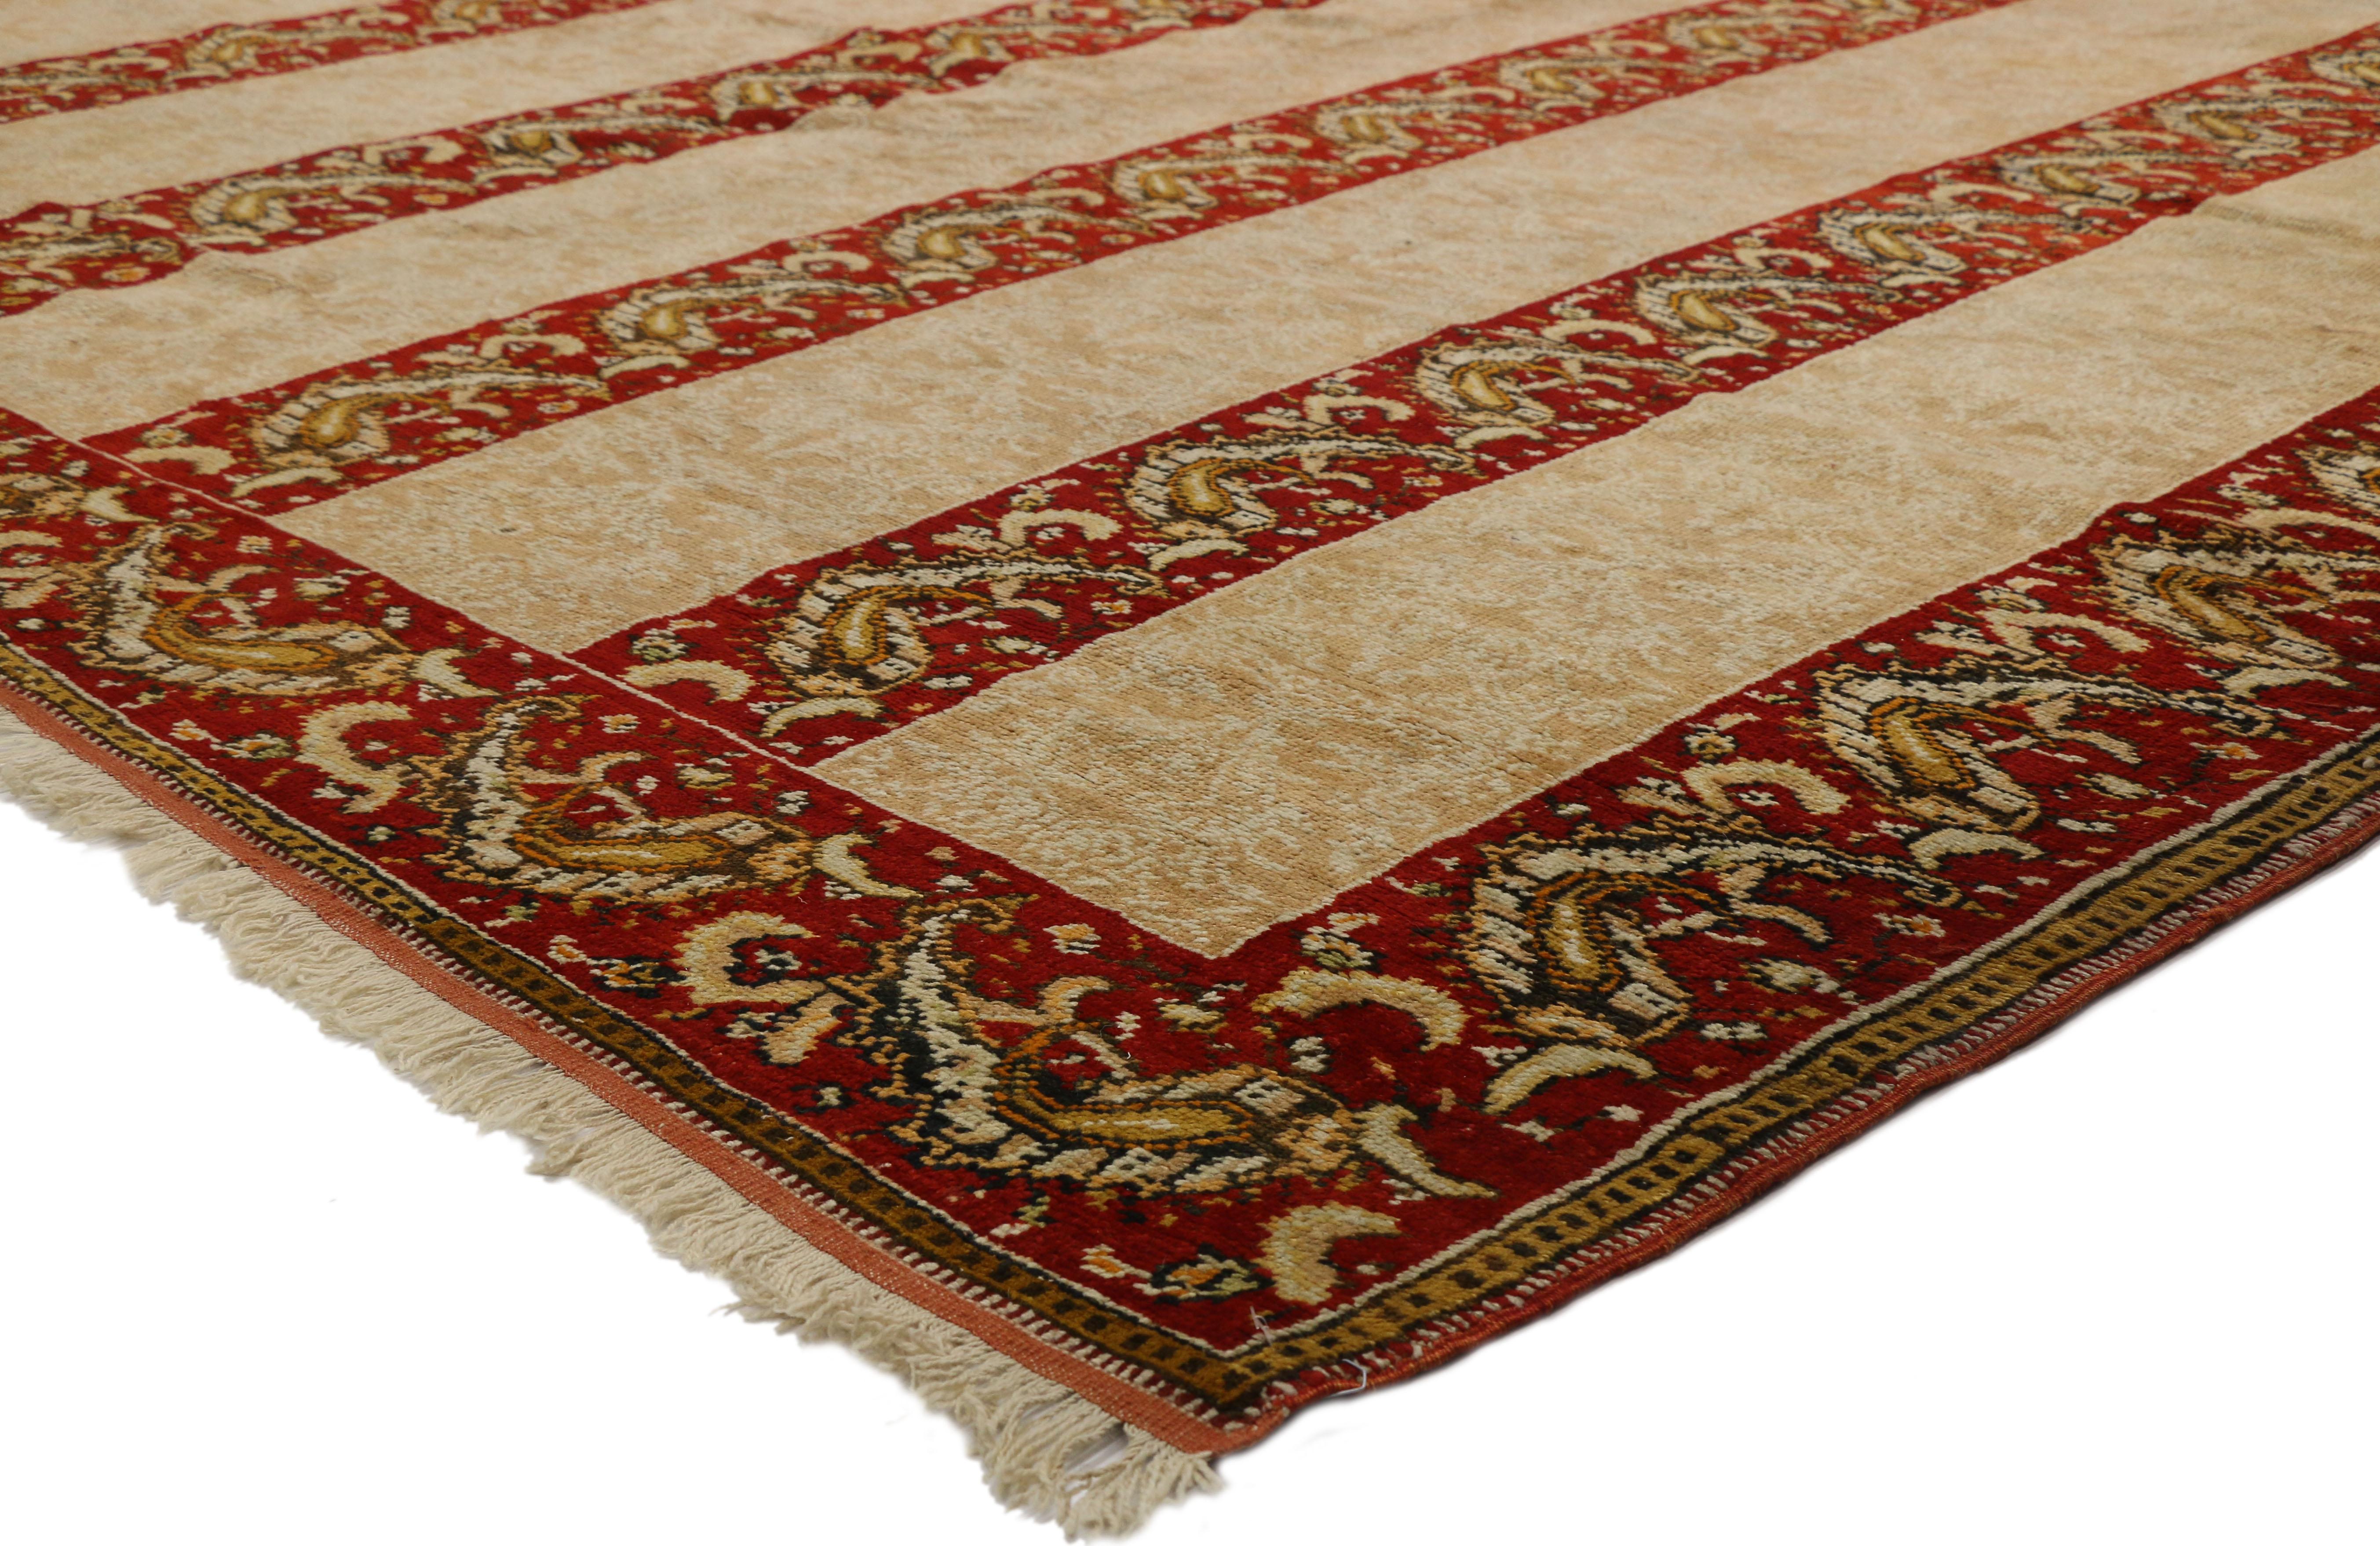 72474 Tapis ancien turc Oushak, 16'00 x 15'07. Les tapis Oushak sont originaires de la ville d'Oushak (également orthographiée Usak) dans l'ouest de l'Anatolie, en Turquie. Cette région possède une riche tradition de tissage de tapis qui remonte à